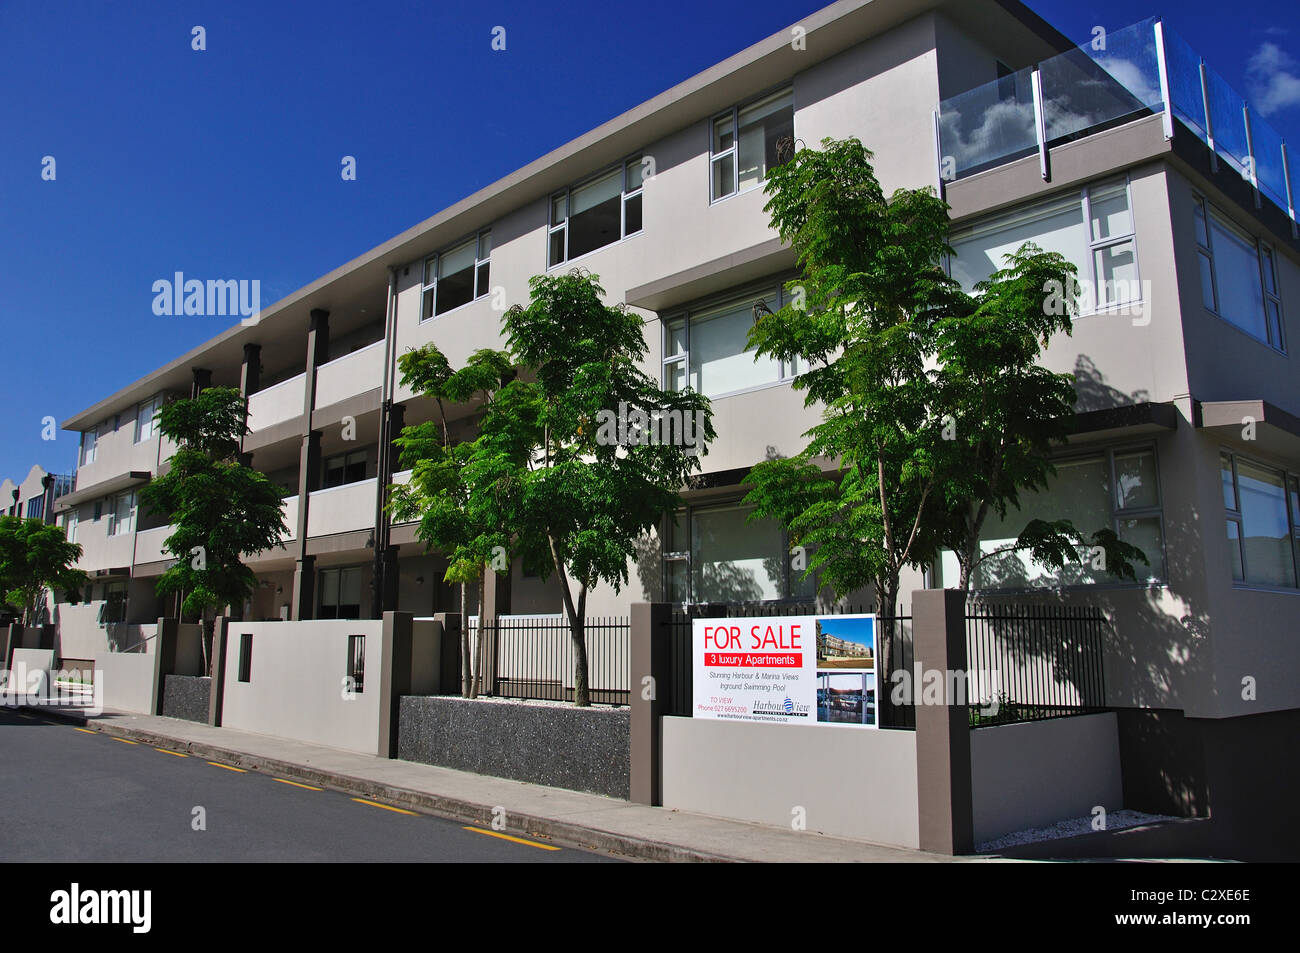 Porto di lusso appartamenti in vendita, Esplanade, Whitianga, Mercurio Bay, Penisola di Coromandel, regione di Waikato, Nuova Zelanda Foto Stock